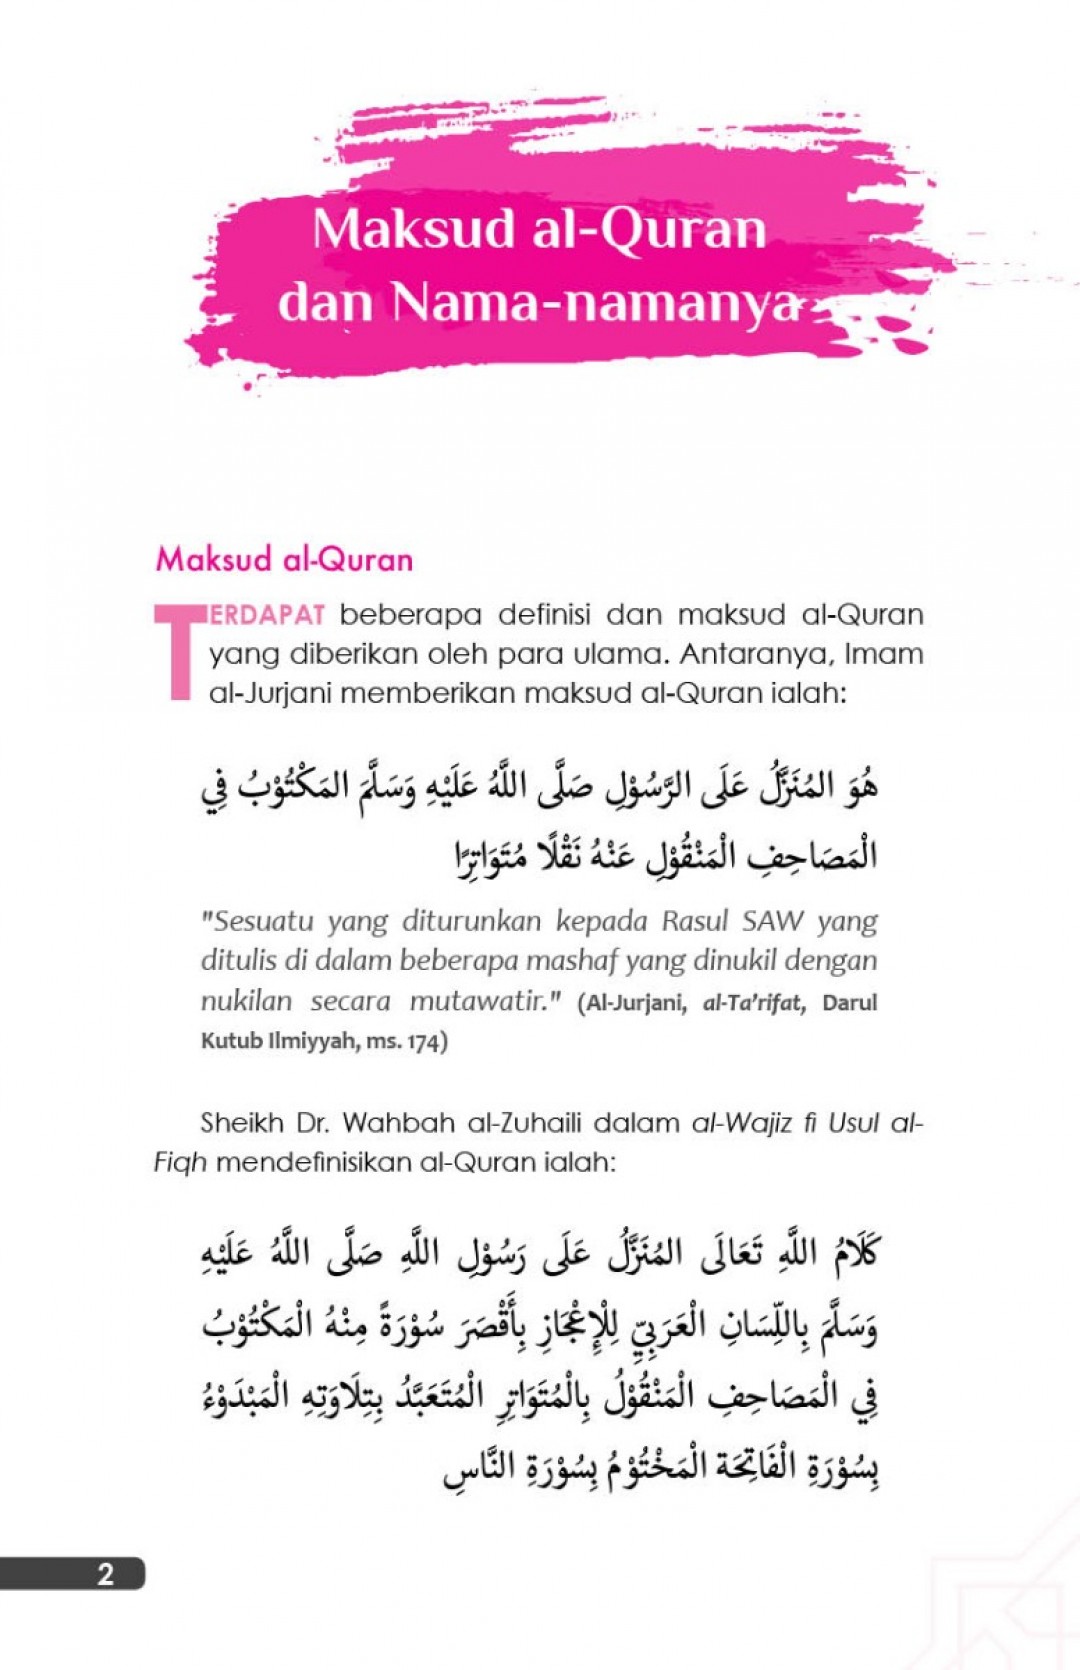 30 Teknik Tepat Tadabbur Al-Quran - Mustafar Mohd Suki